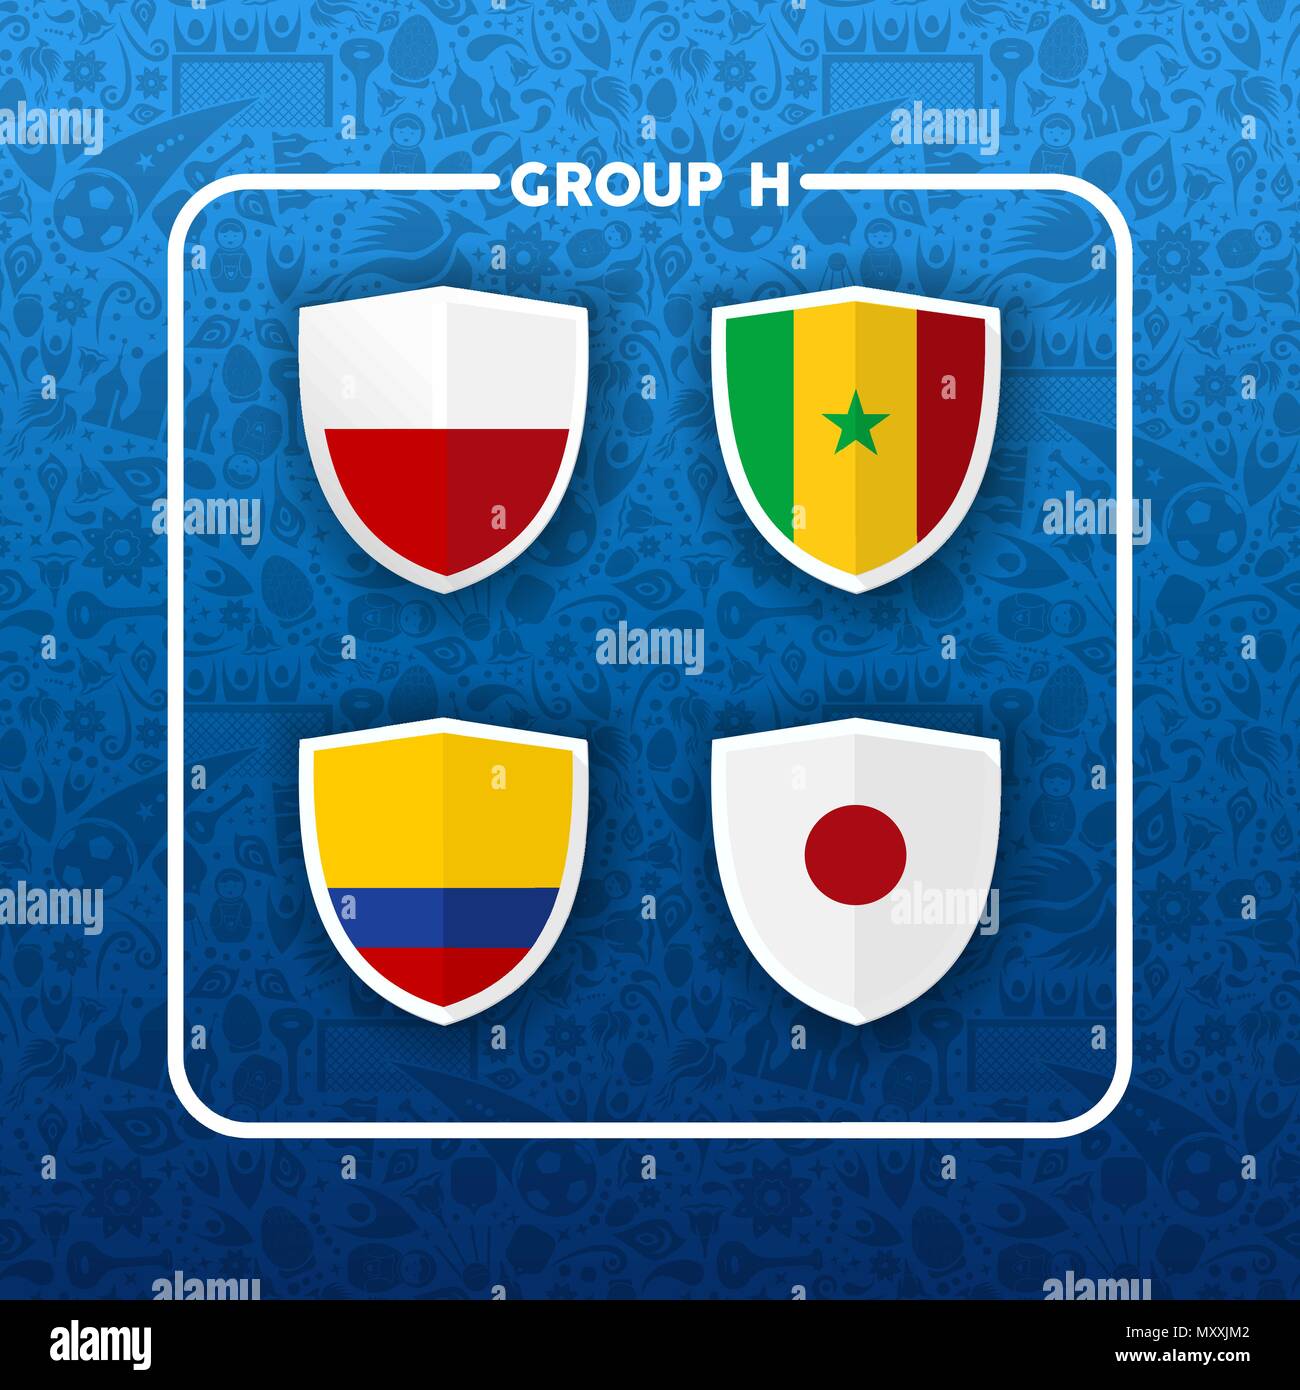 Wm-Ereignis planen. Gruppe H Land team Liste der Fußball-Match spiele. Mit Kolumbien, Japan, Polen und Senegal. EPS 10 Vektor. Stock Vektor